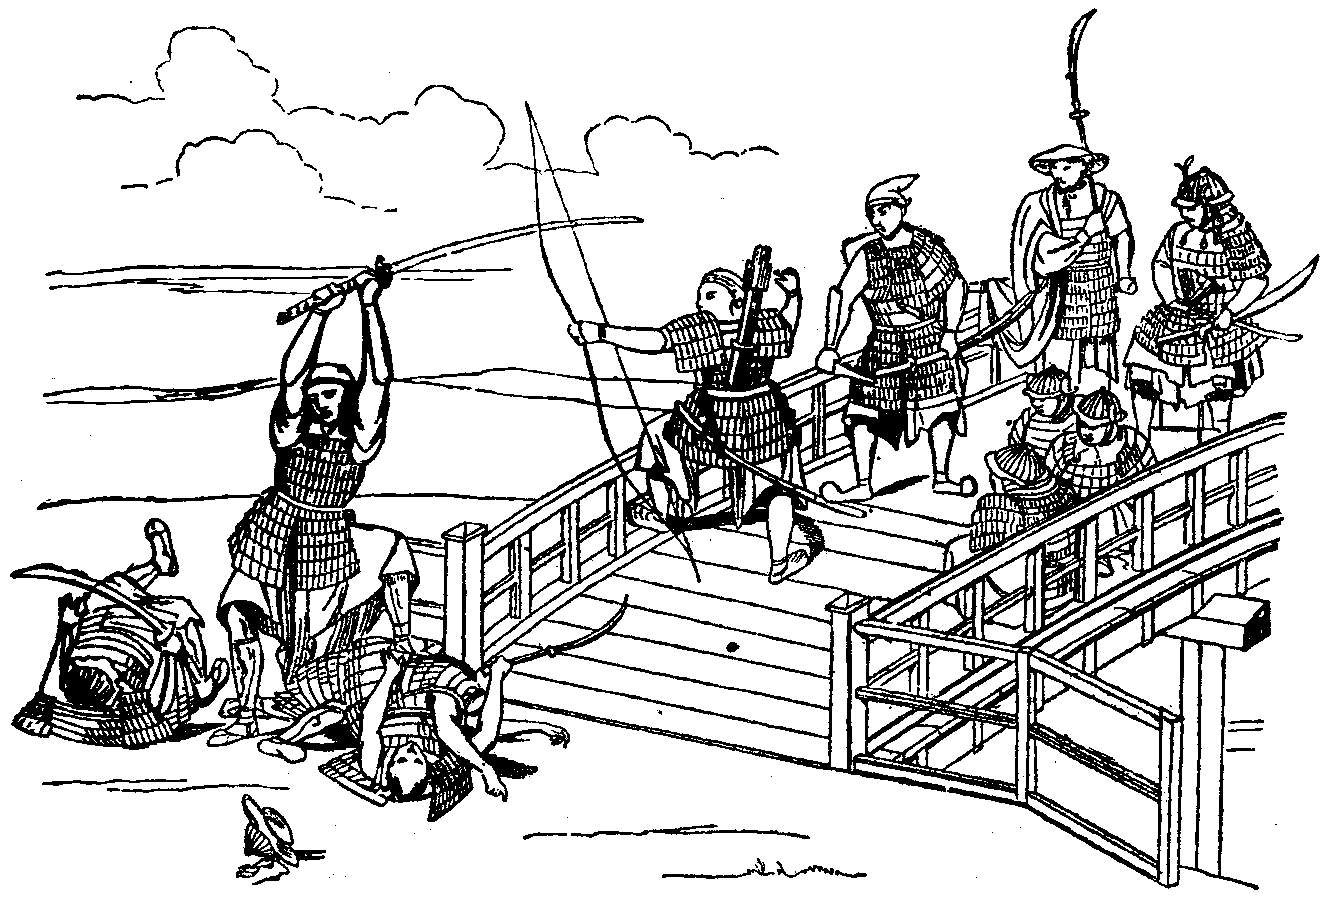 Chinese-Japanese War